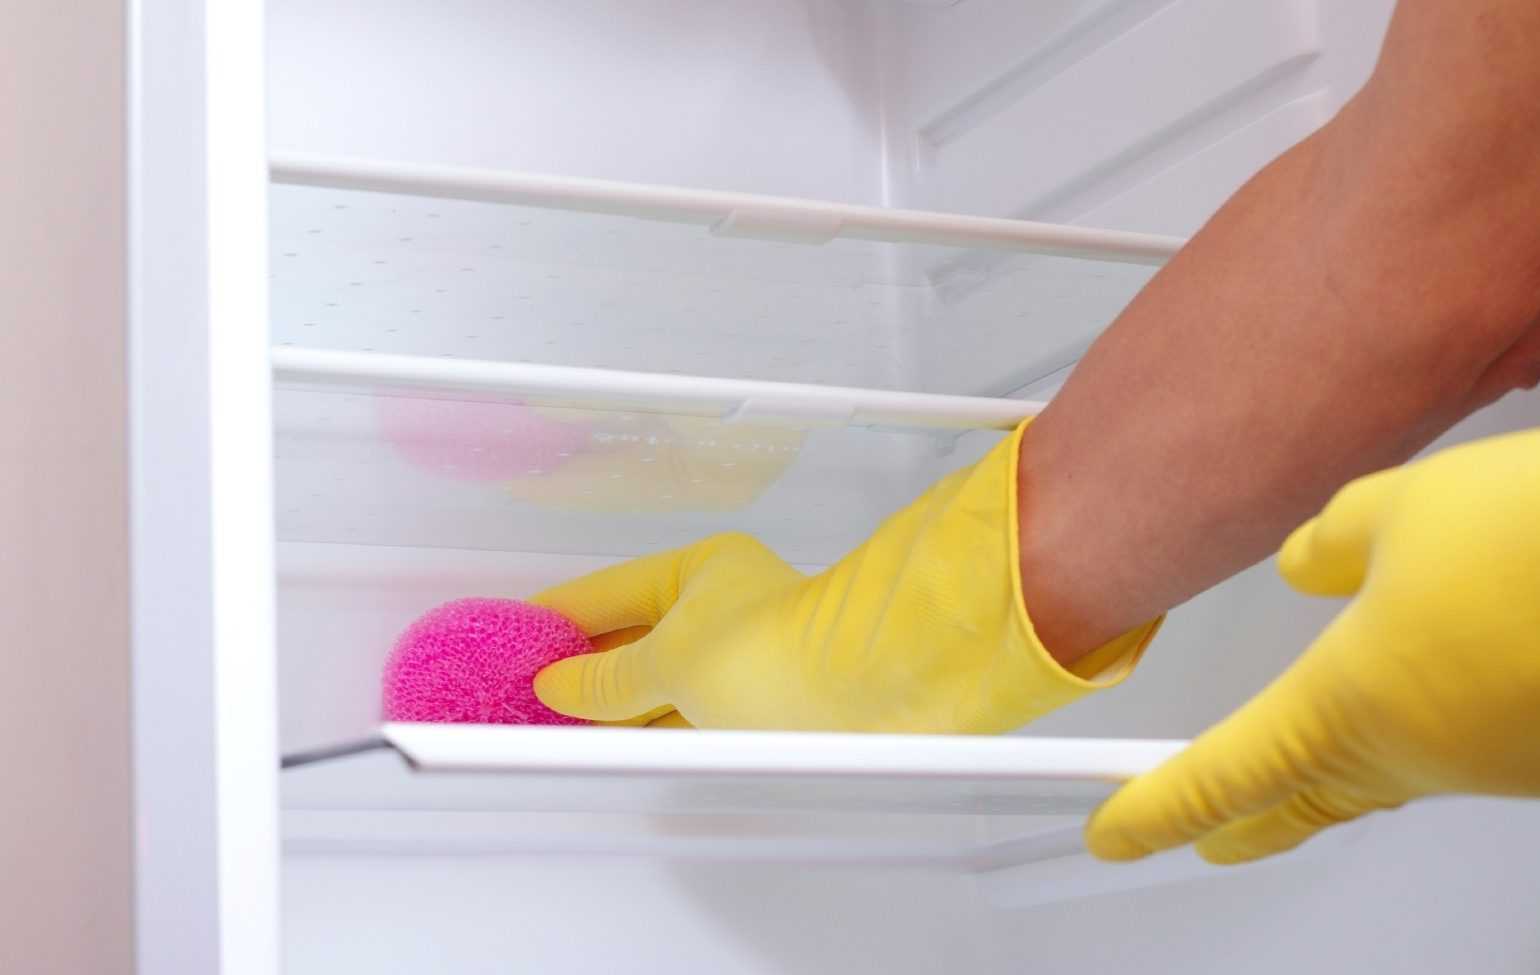 Средства для очистки холодильника: методы и правила ухода